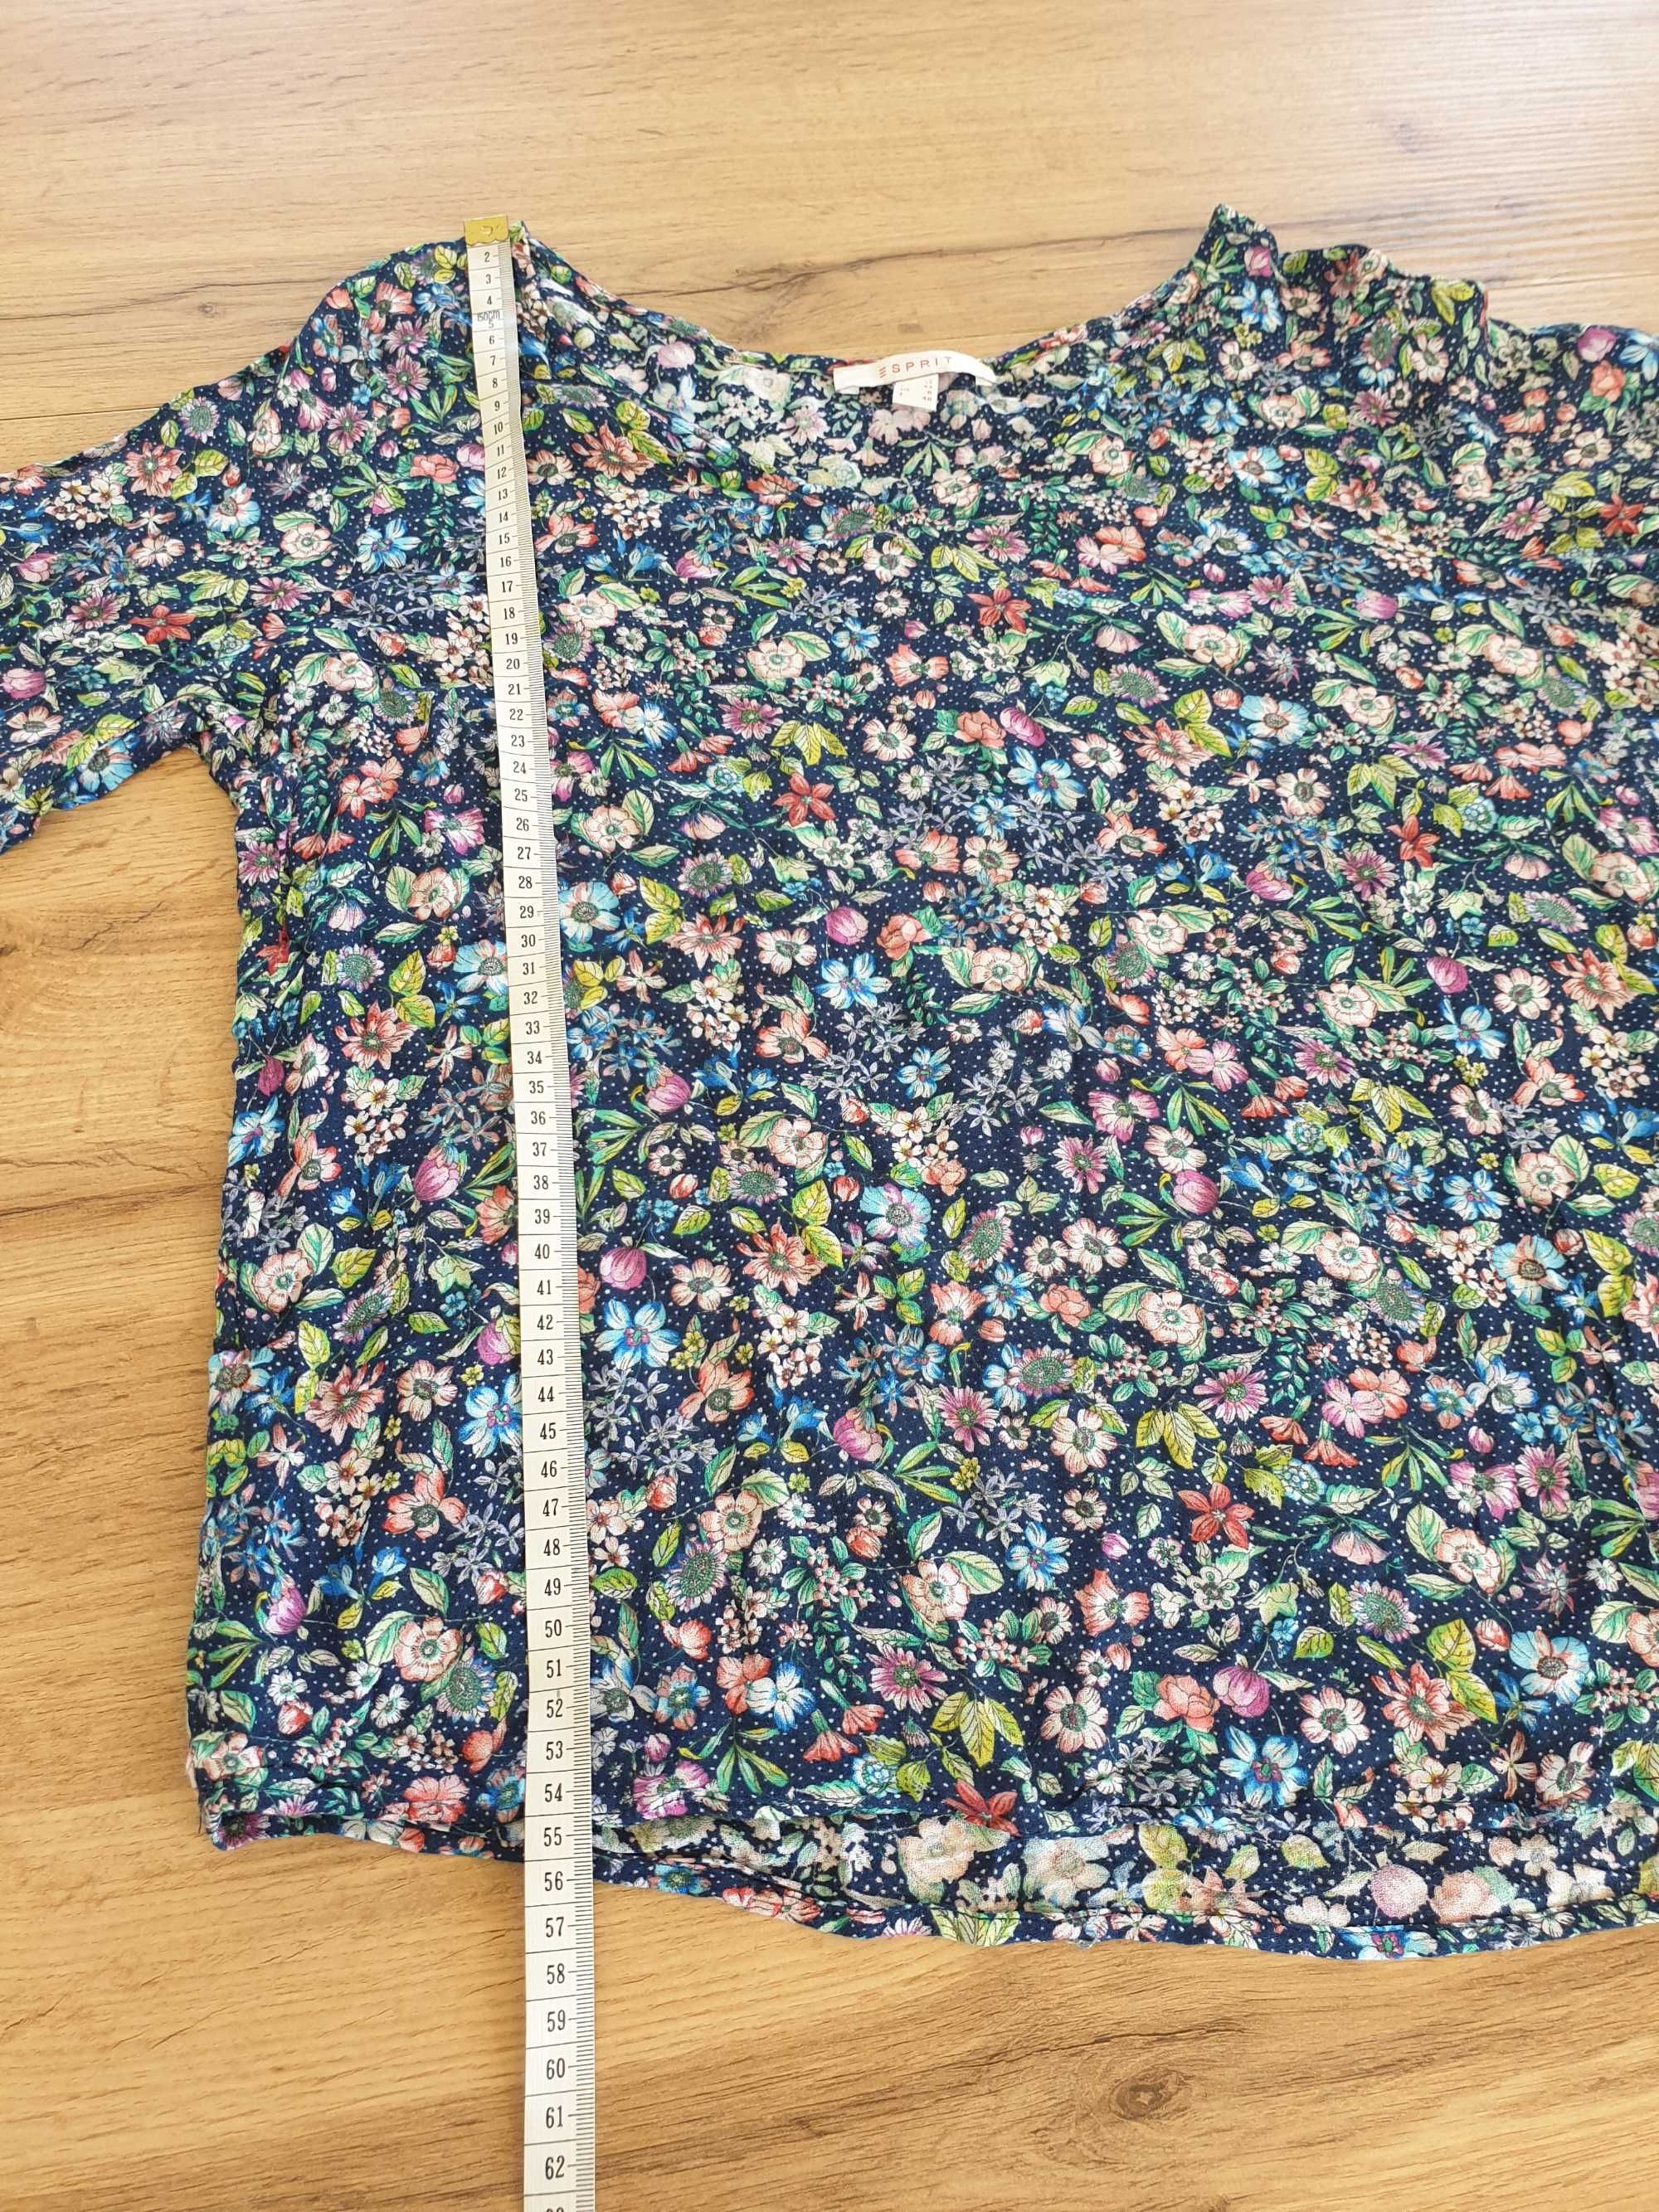 Bluzeczka w kwiaty, 100% wiskoza, Esprit, rozmiar M/L